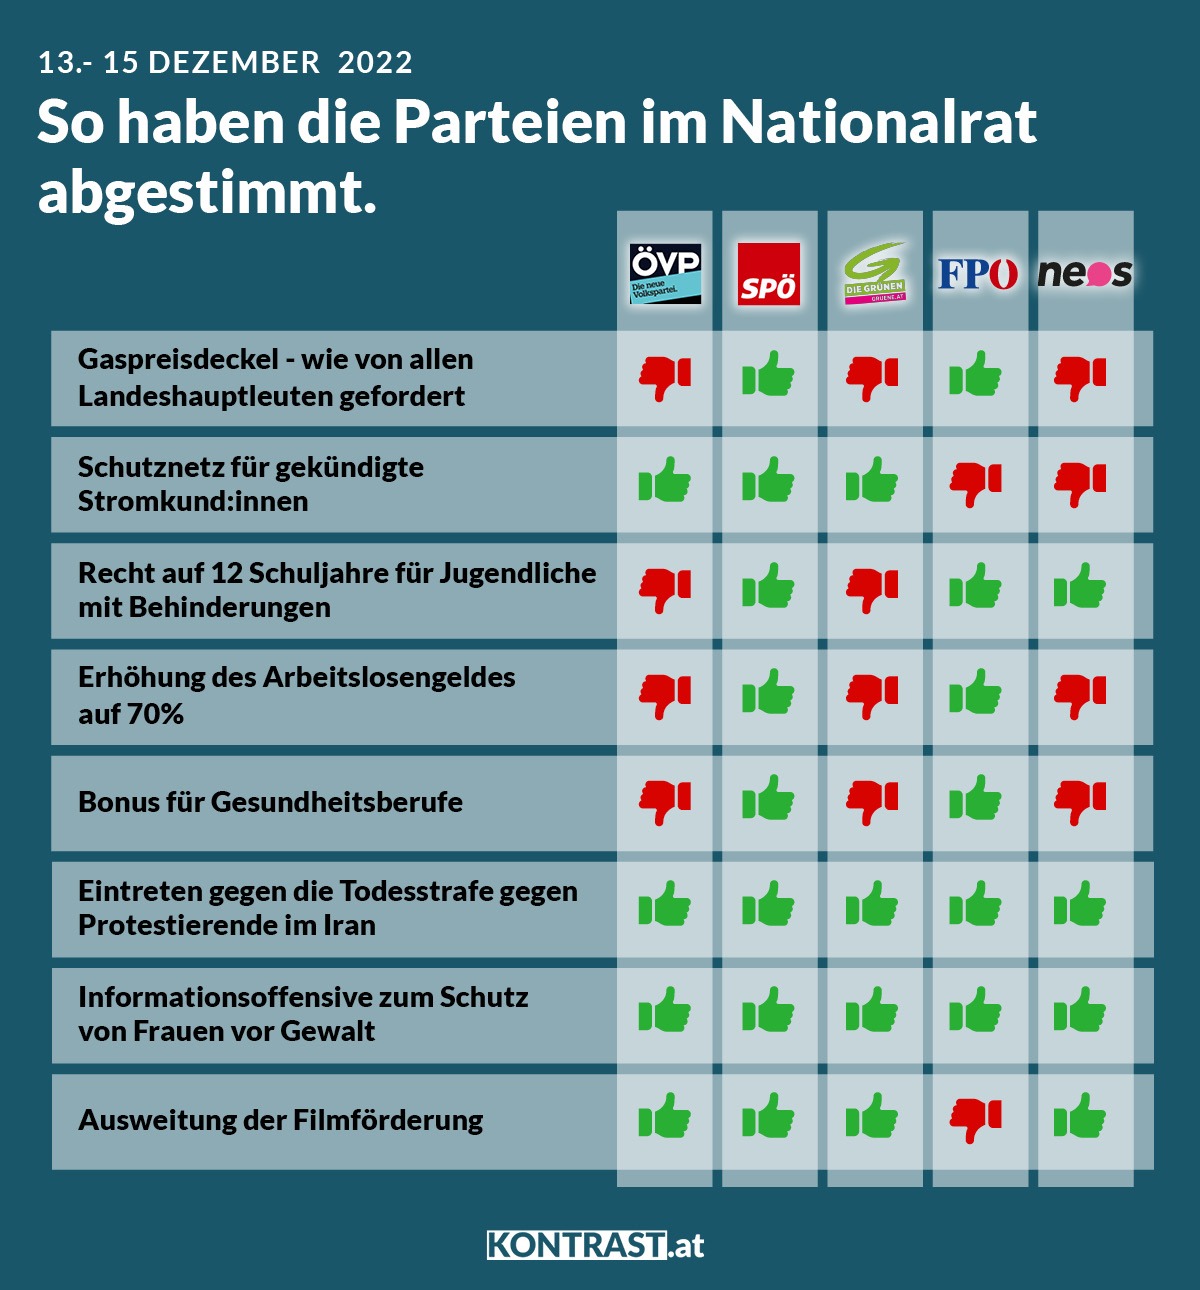 Nationalratssitzung 13. bis 15. Dezember: So haben die Parteien abgestimmt